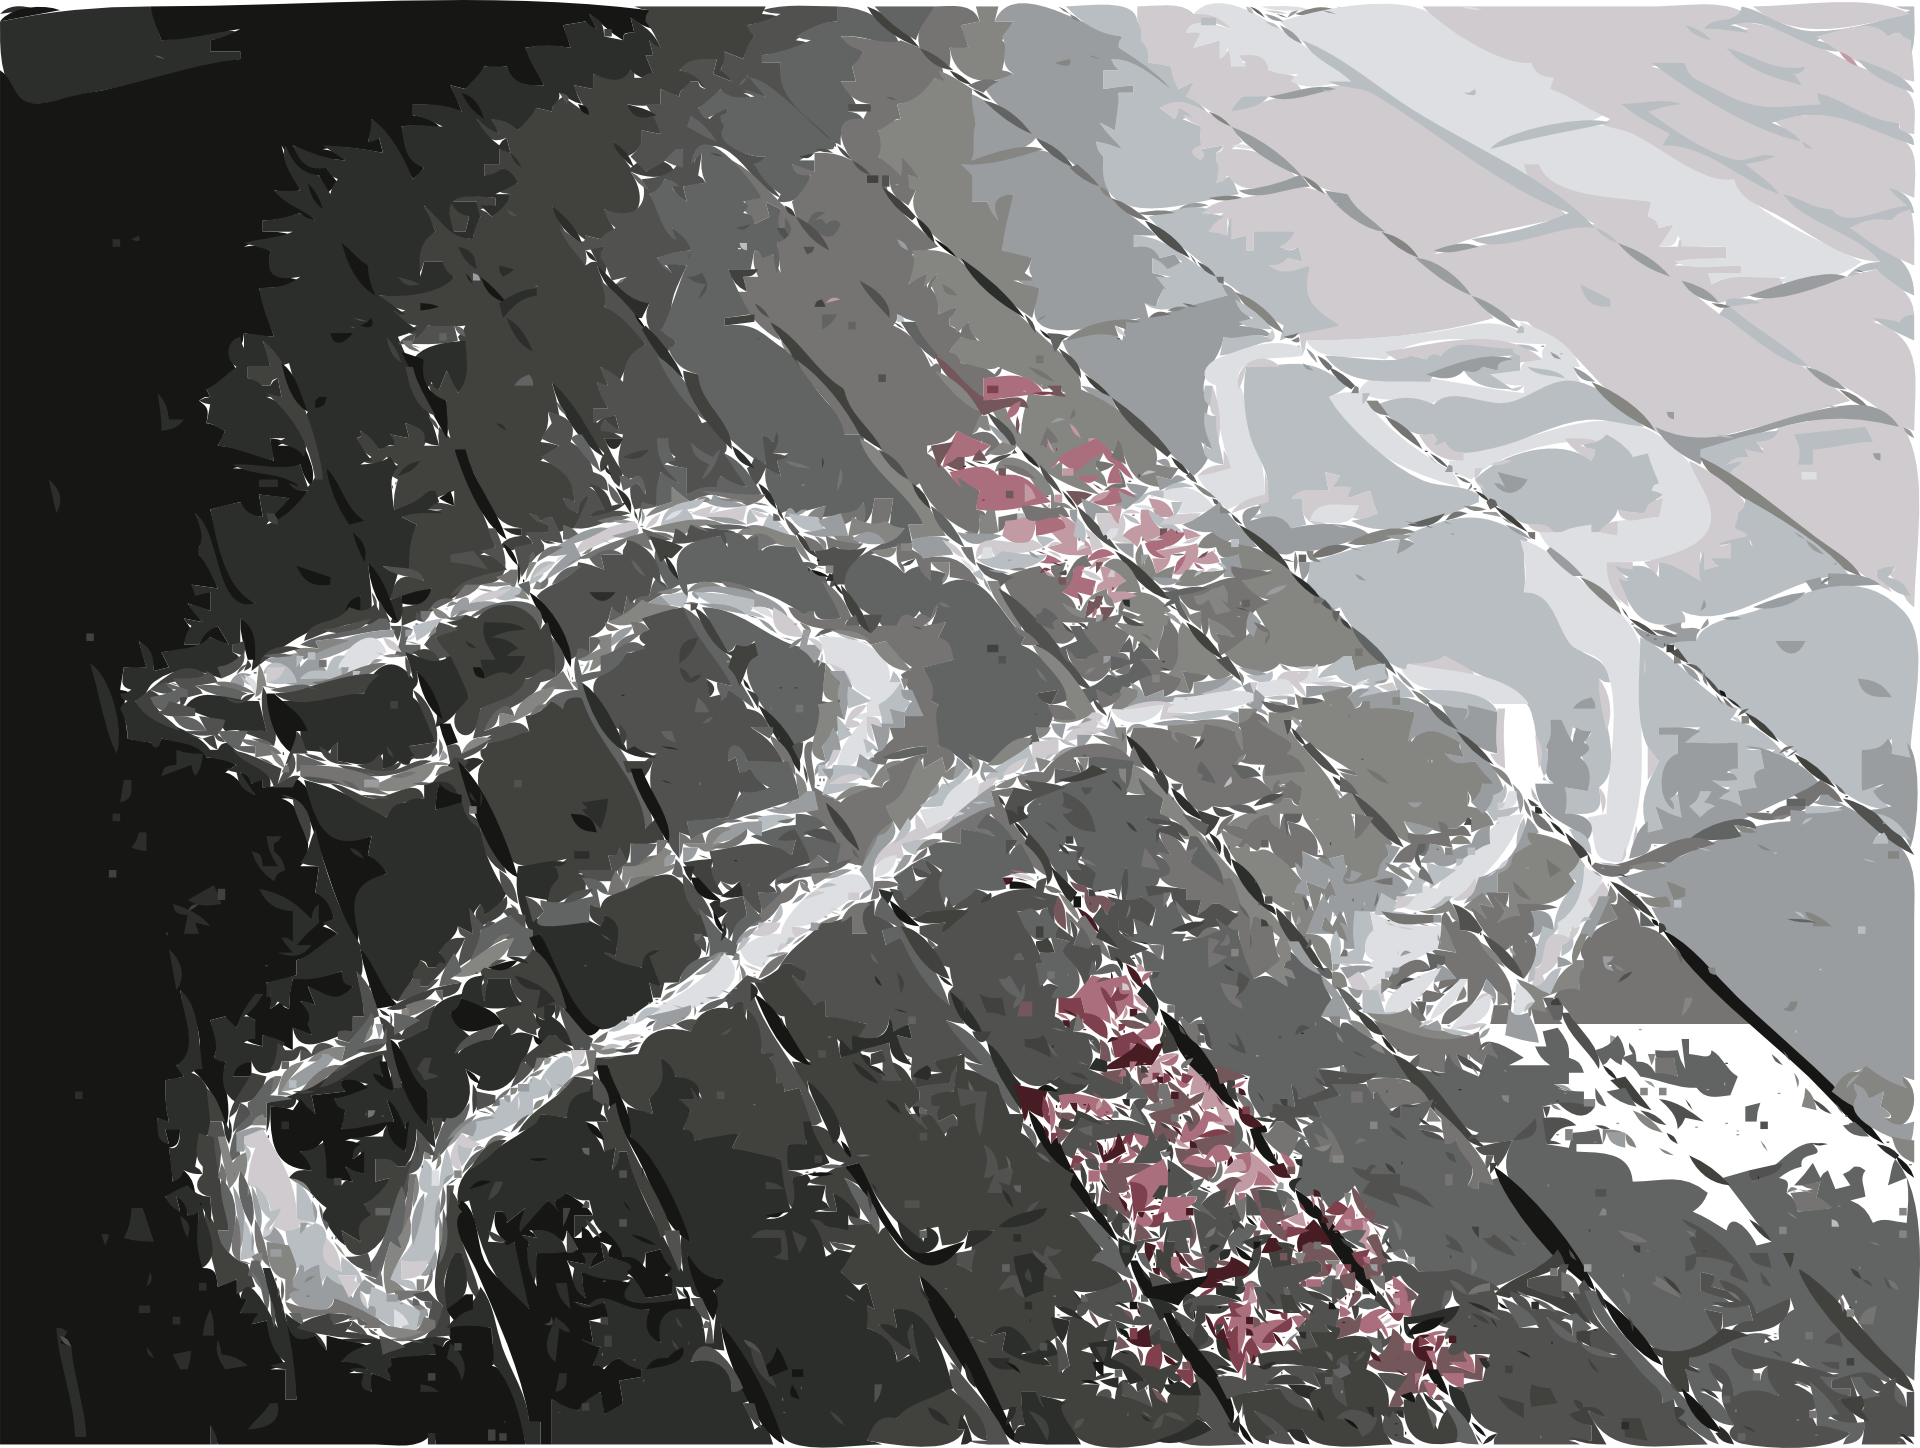 crime-scene-30112-chalk-outline-pixabay-cc0-pubdom.png